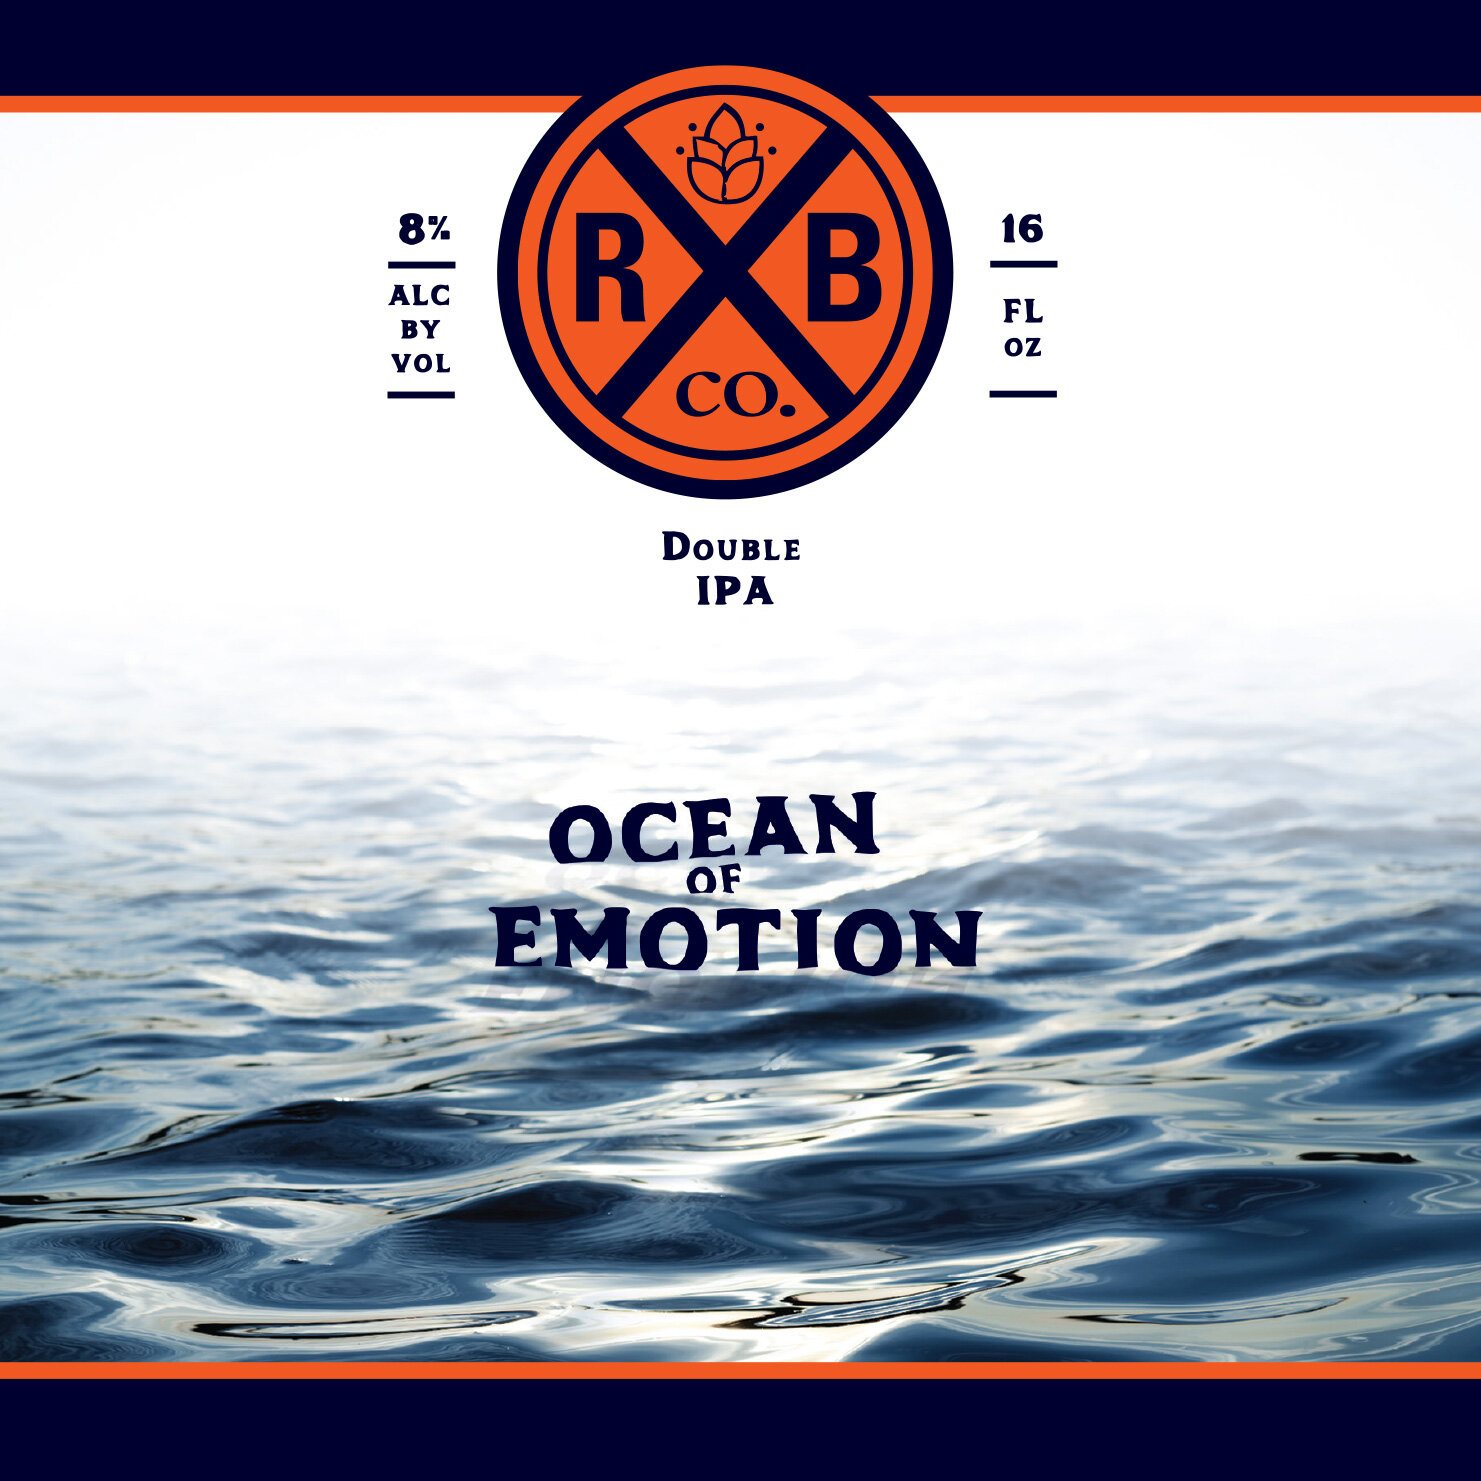 beer label design - ocean of emotion